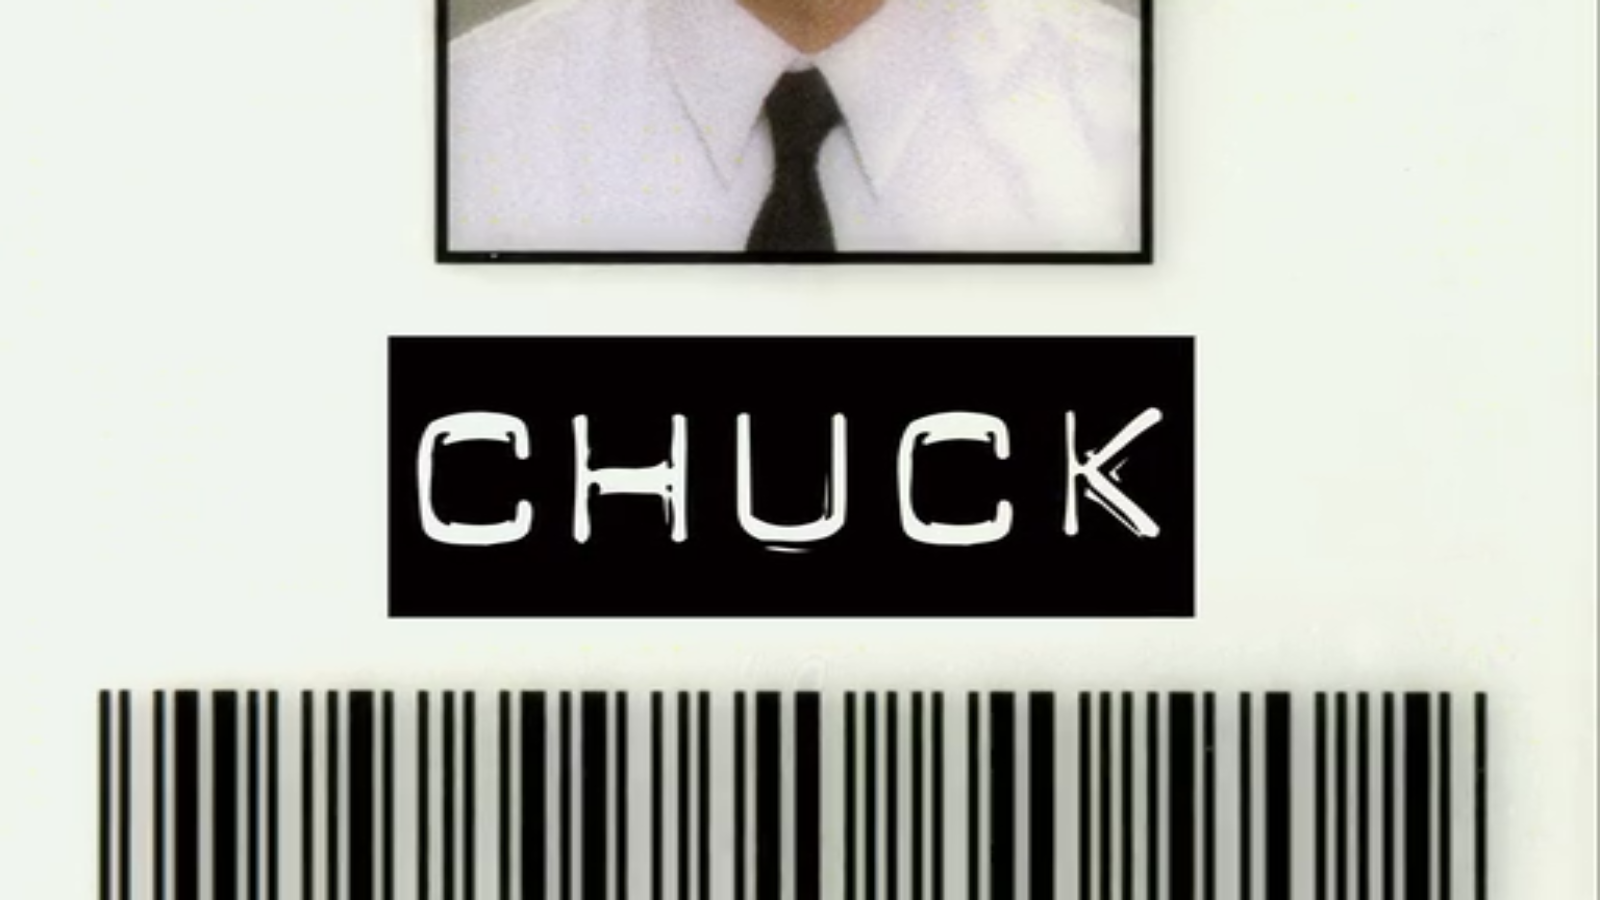 Chuck 1600x900